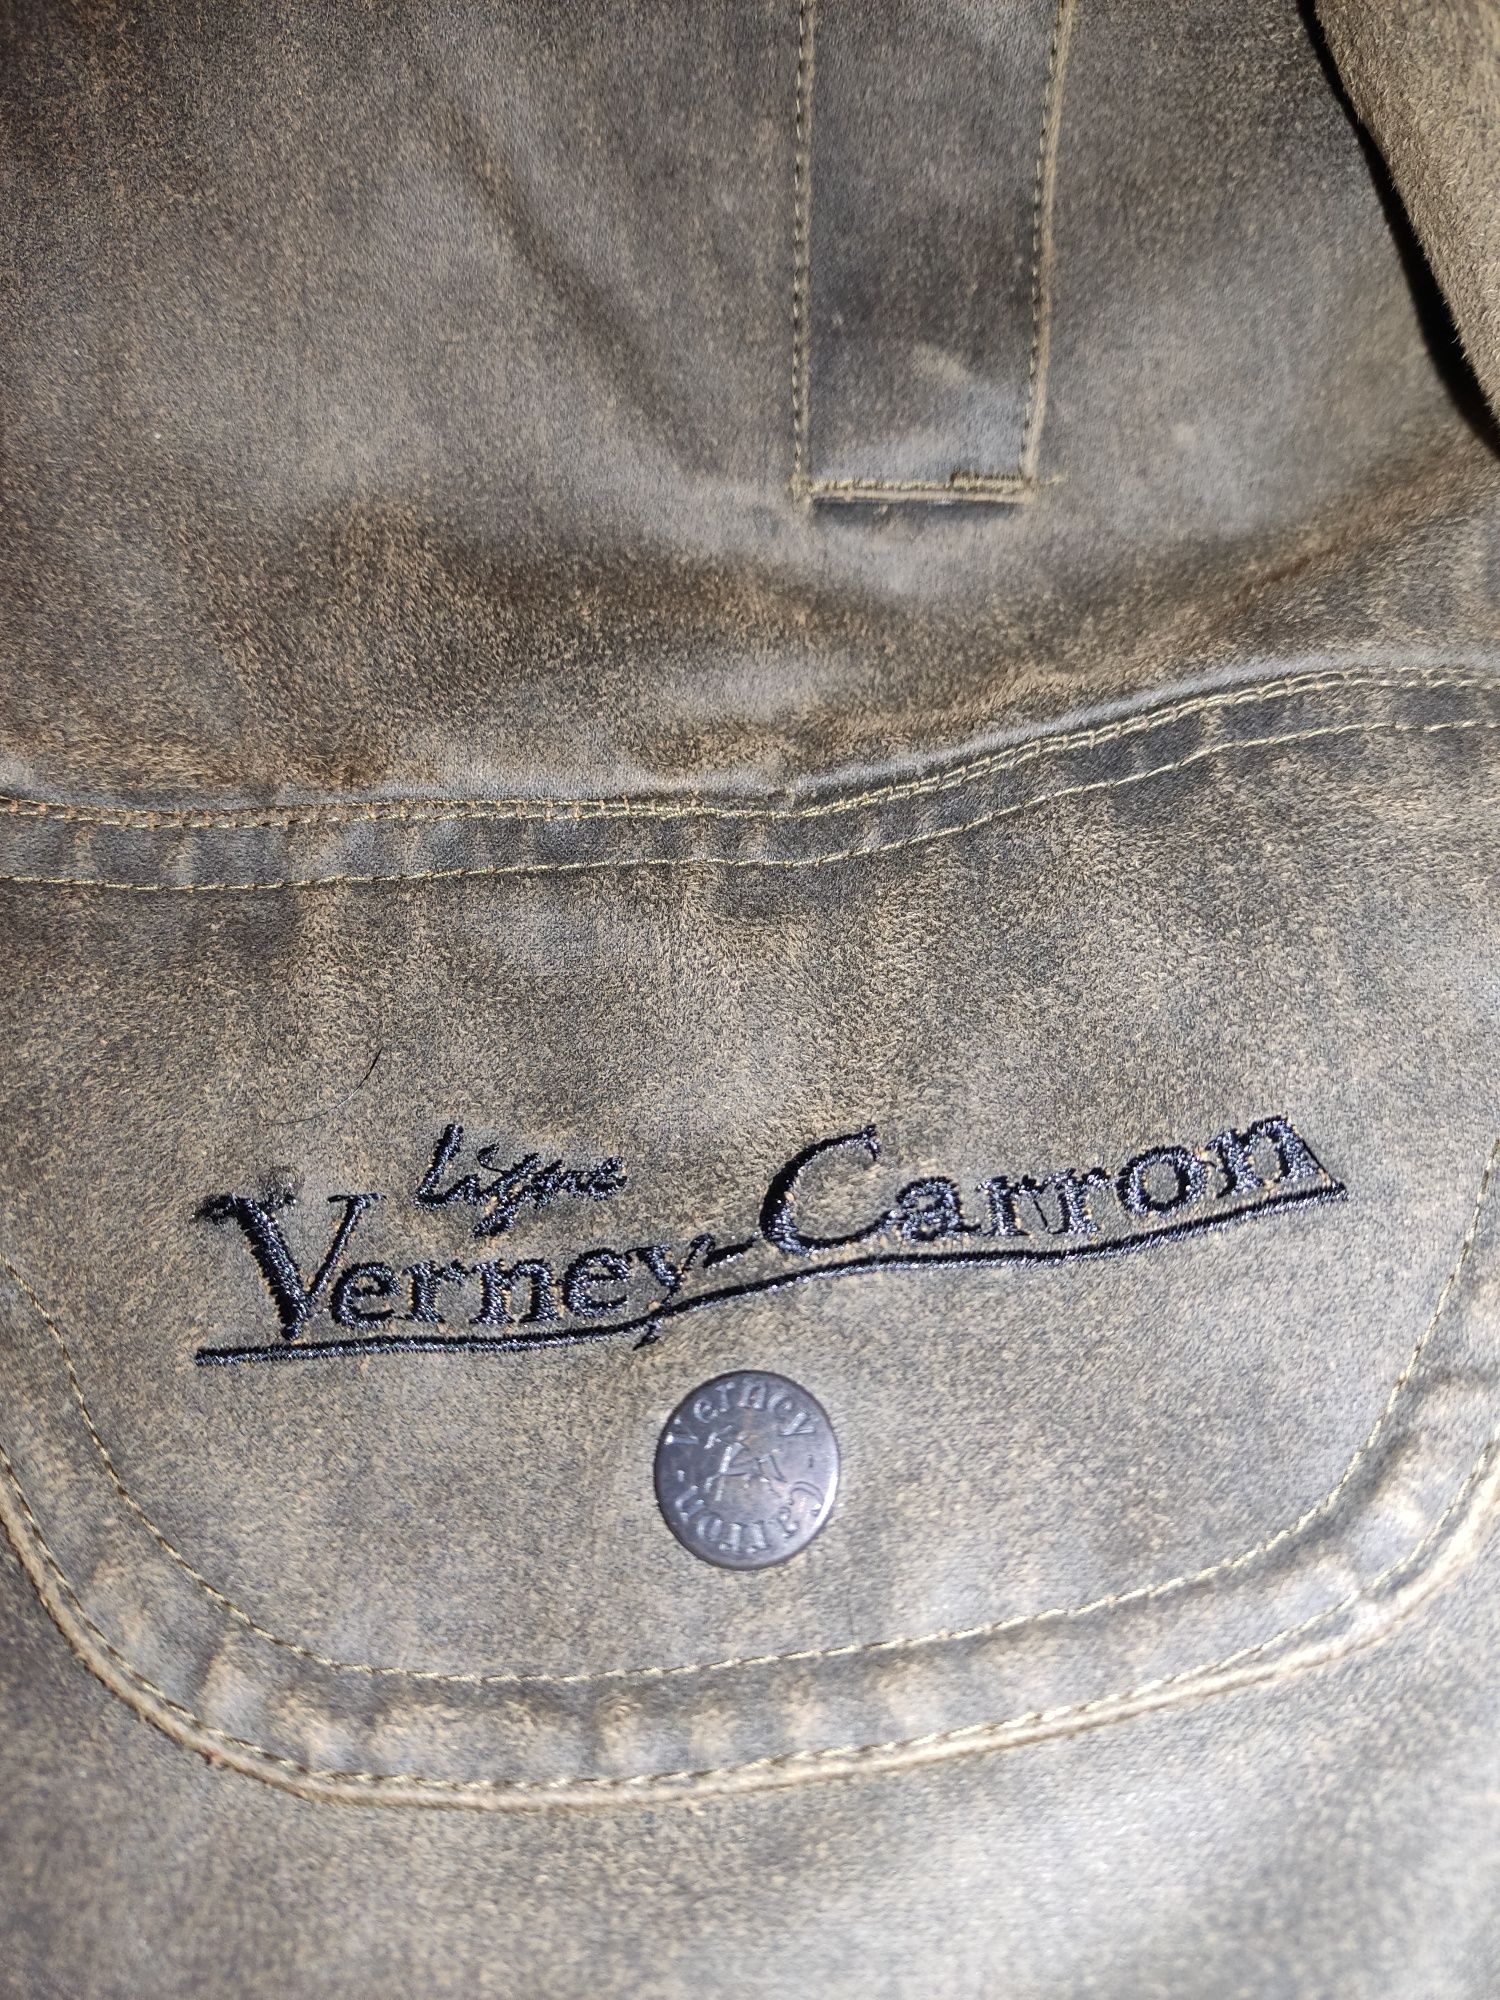 Продается демисезонная охотничья куртка Verney Carron 56р.